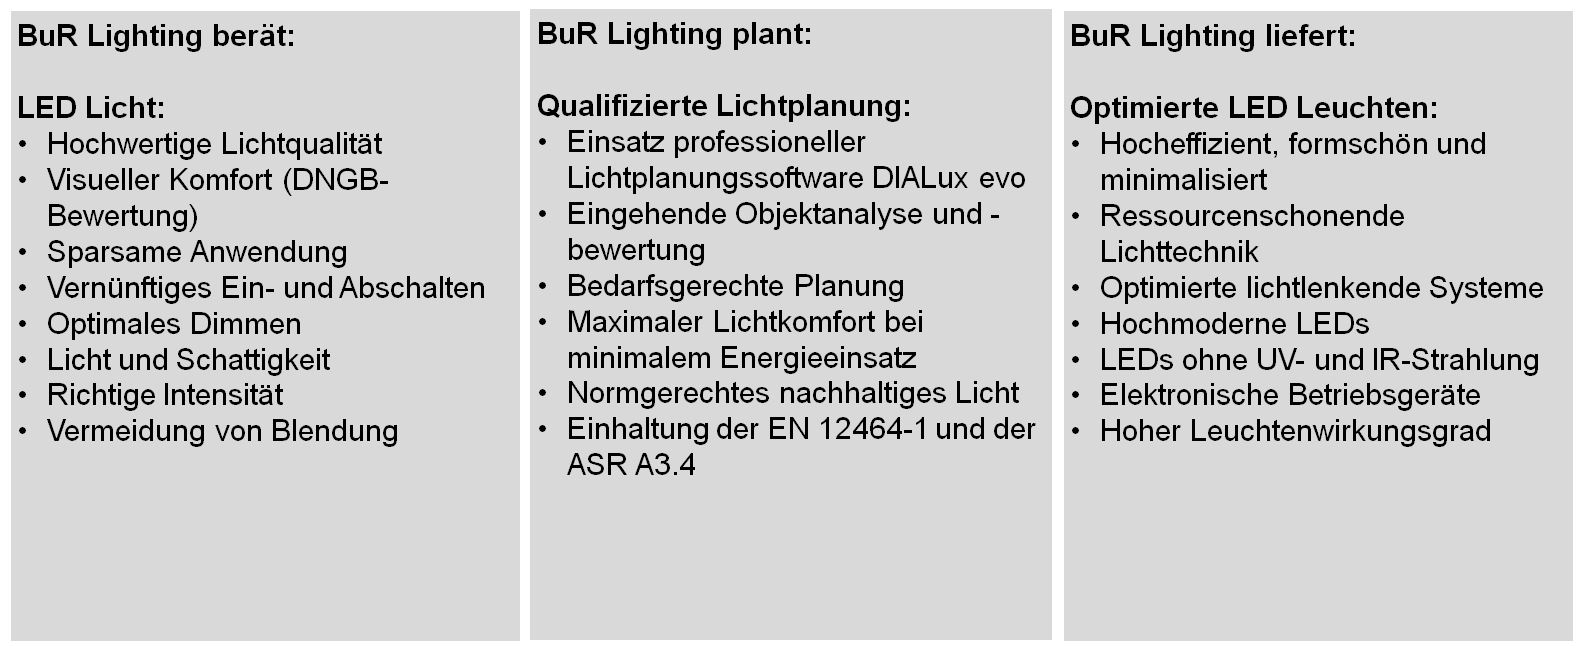 BuR Lighting Bünte und Remmler Nachhaltigkeit Licht LED Beleuchtung